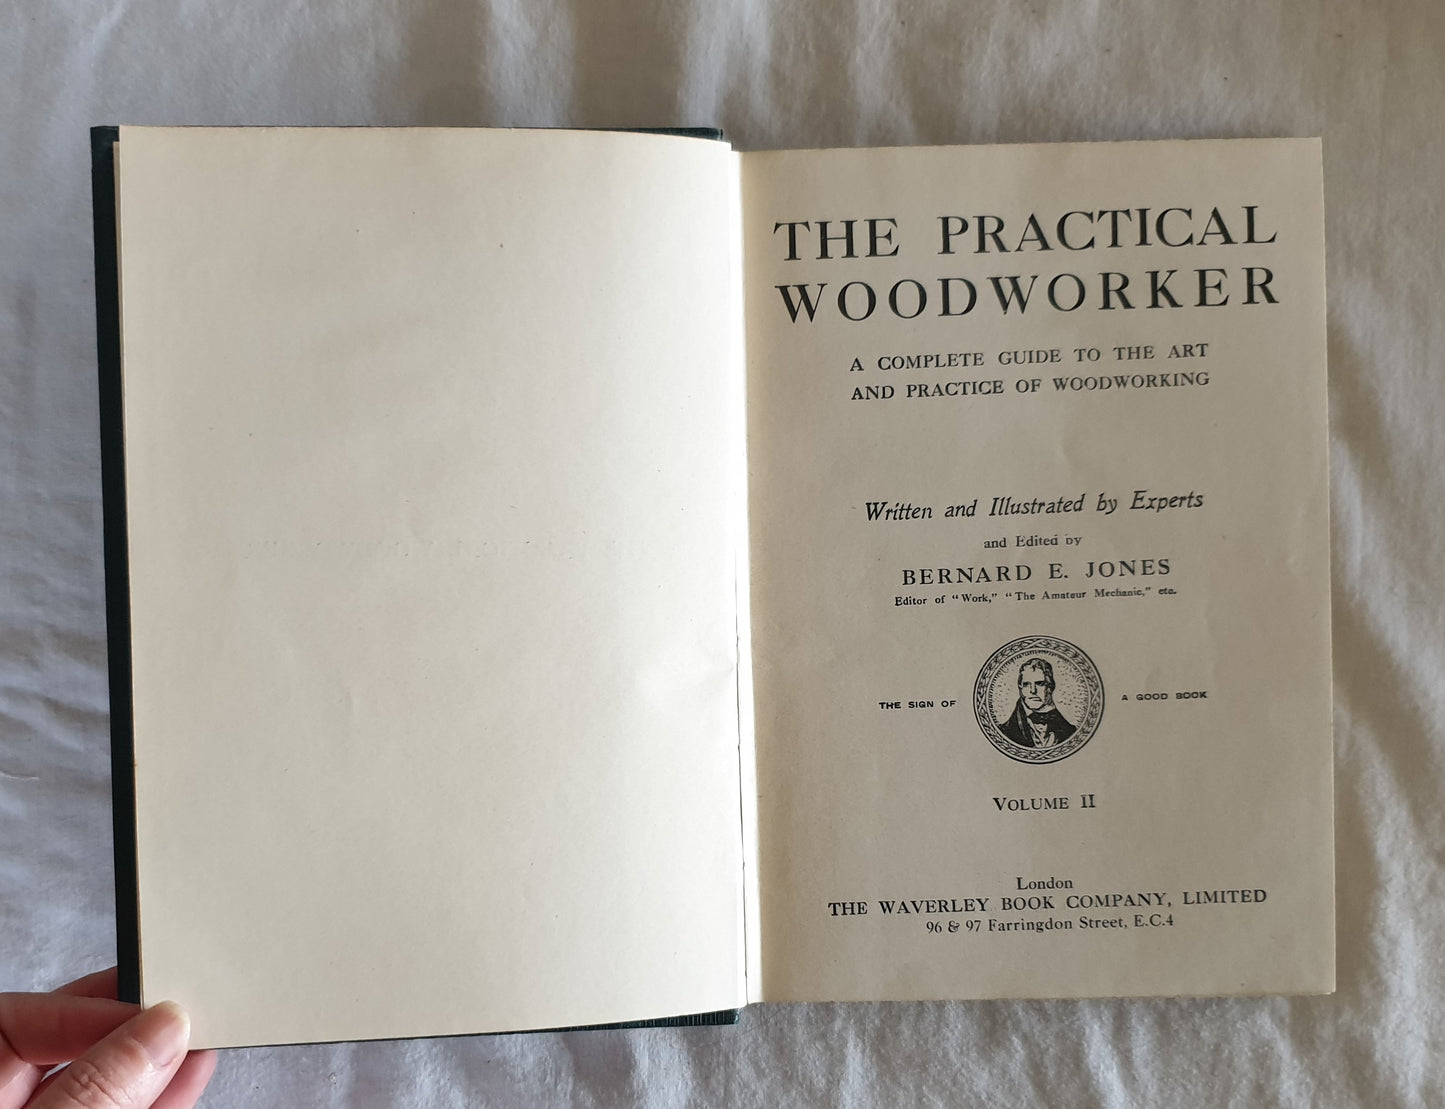 The Practical Woodworker by Bernard E. Jones - Volume 3